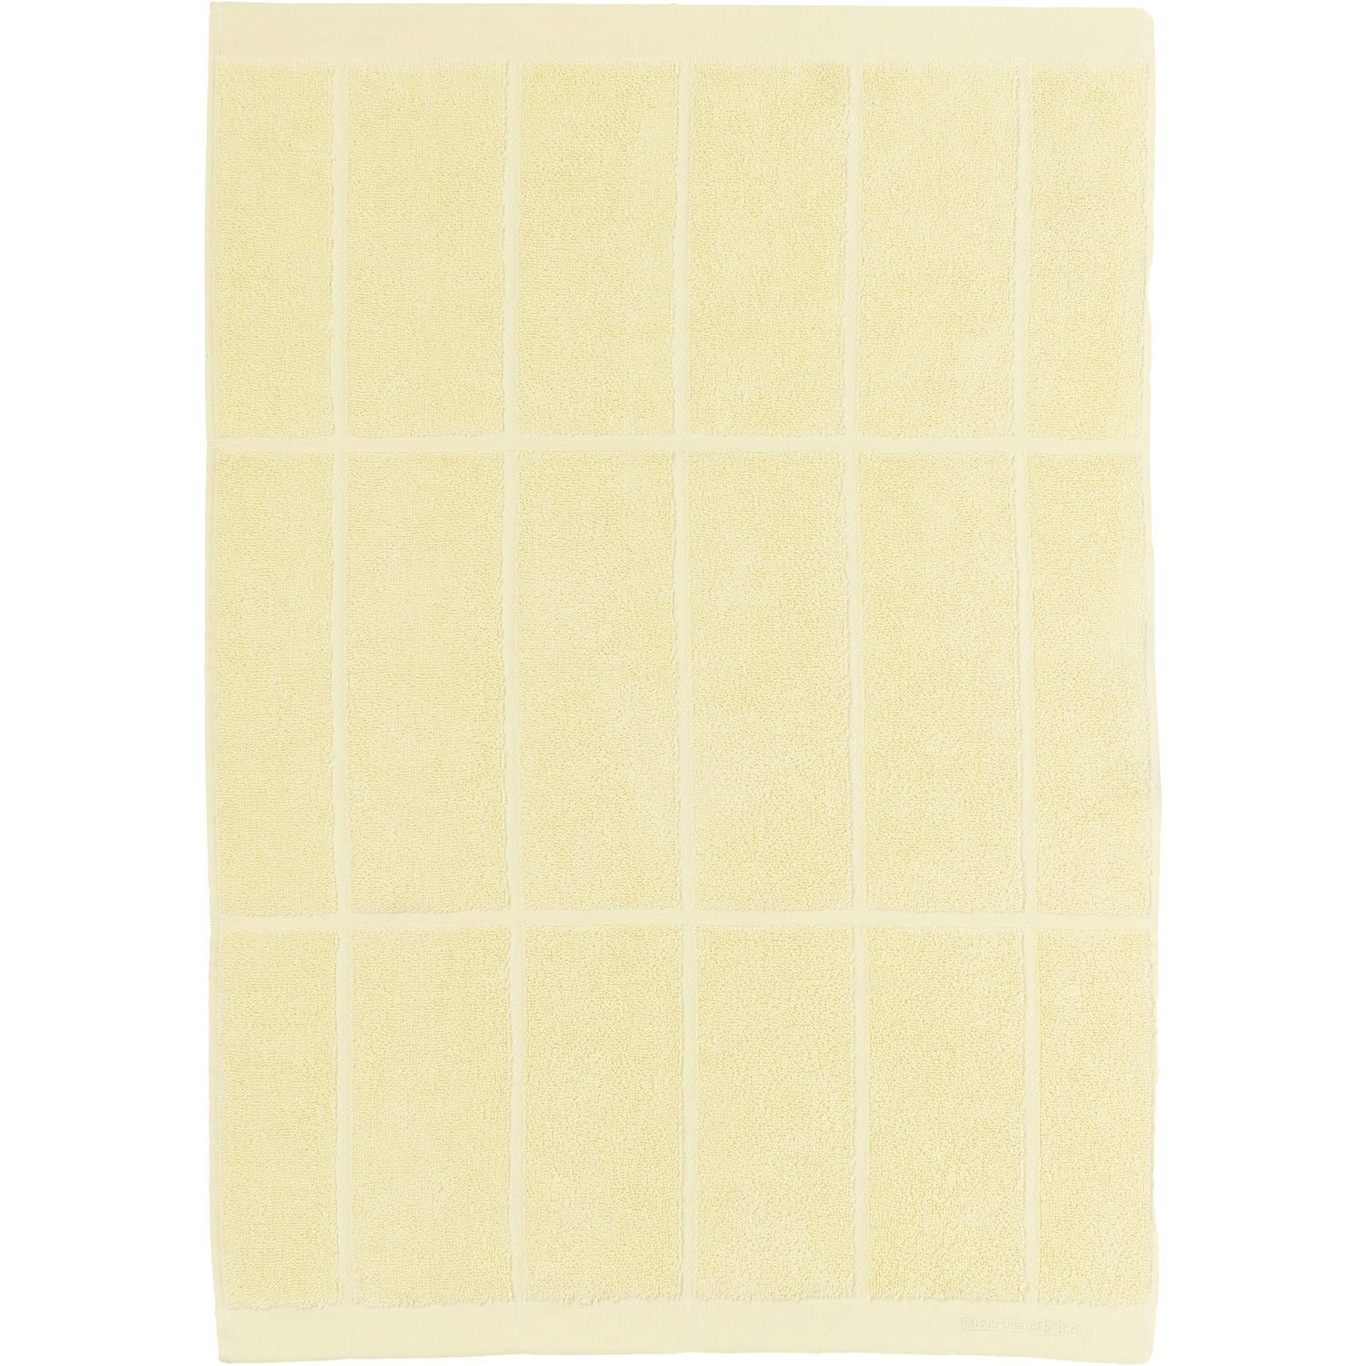 Tiiliskivi Handduk 50x70 cm, Butter Yellow